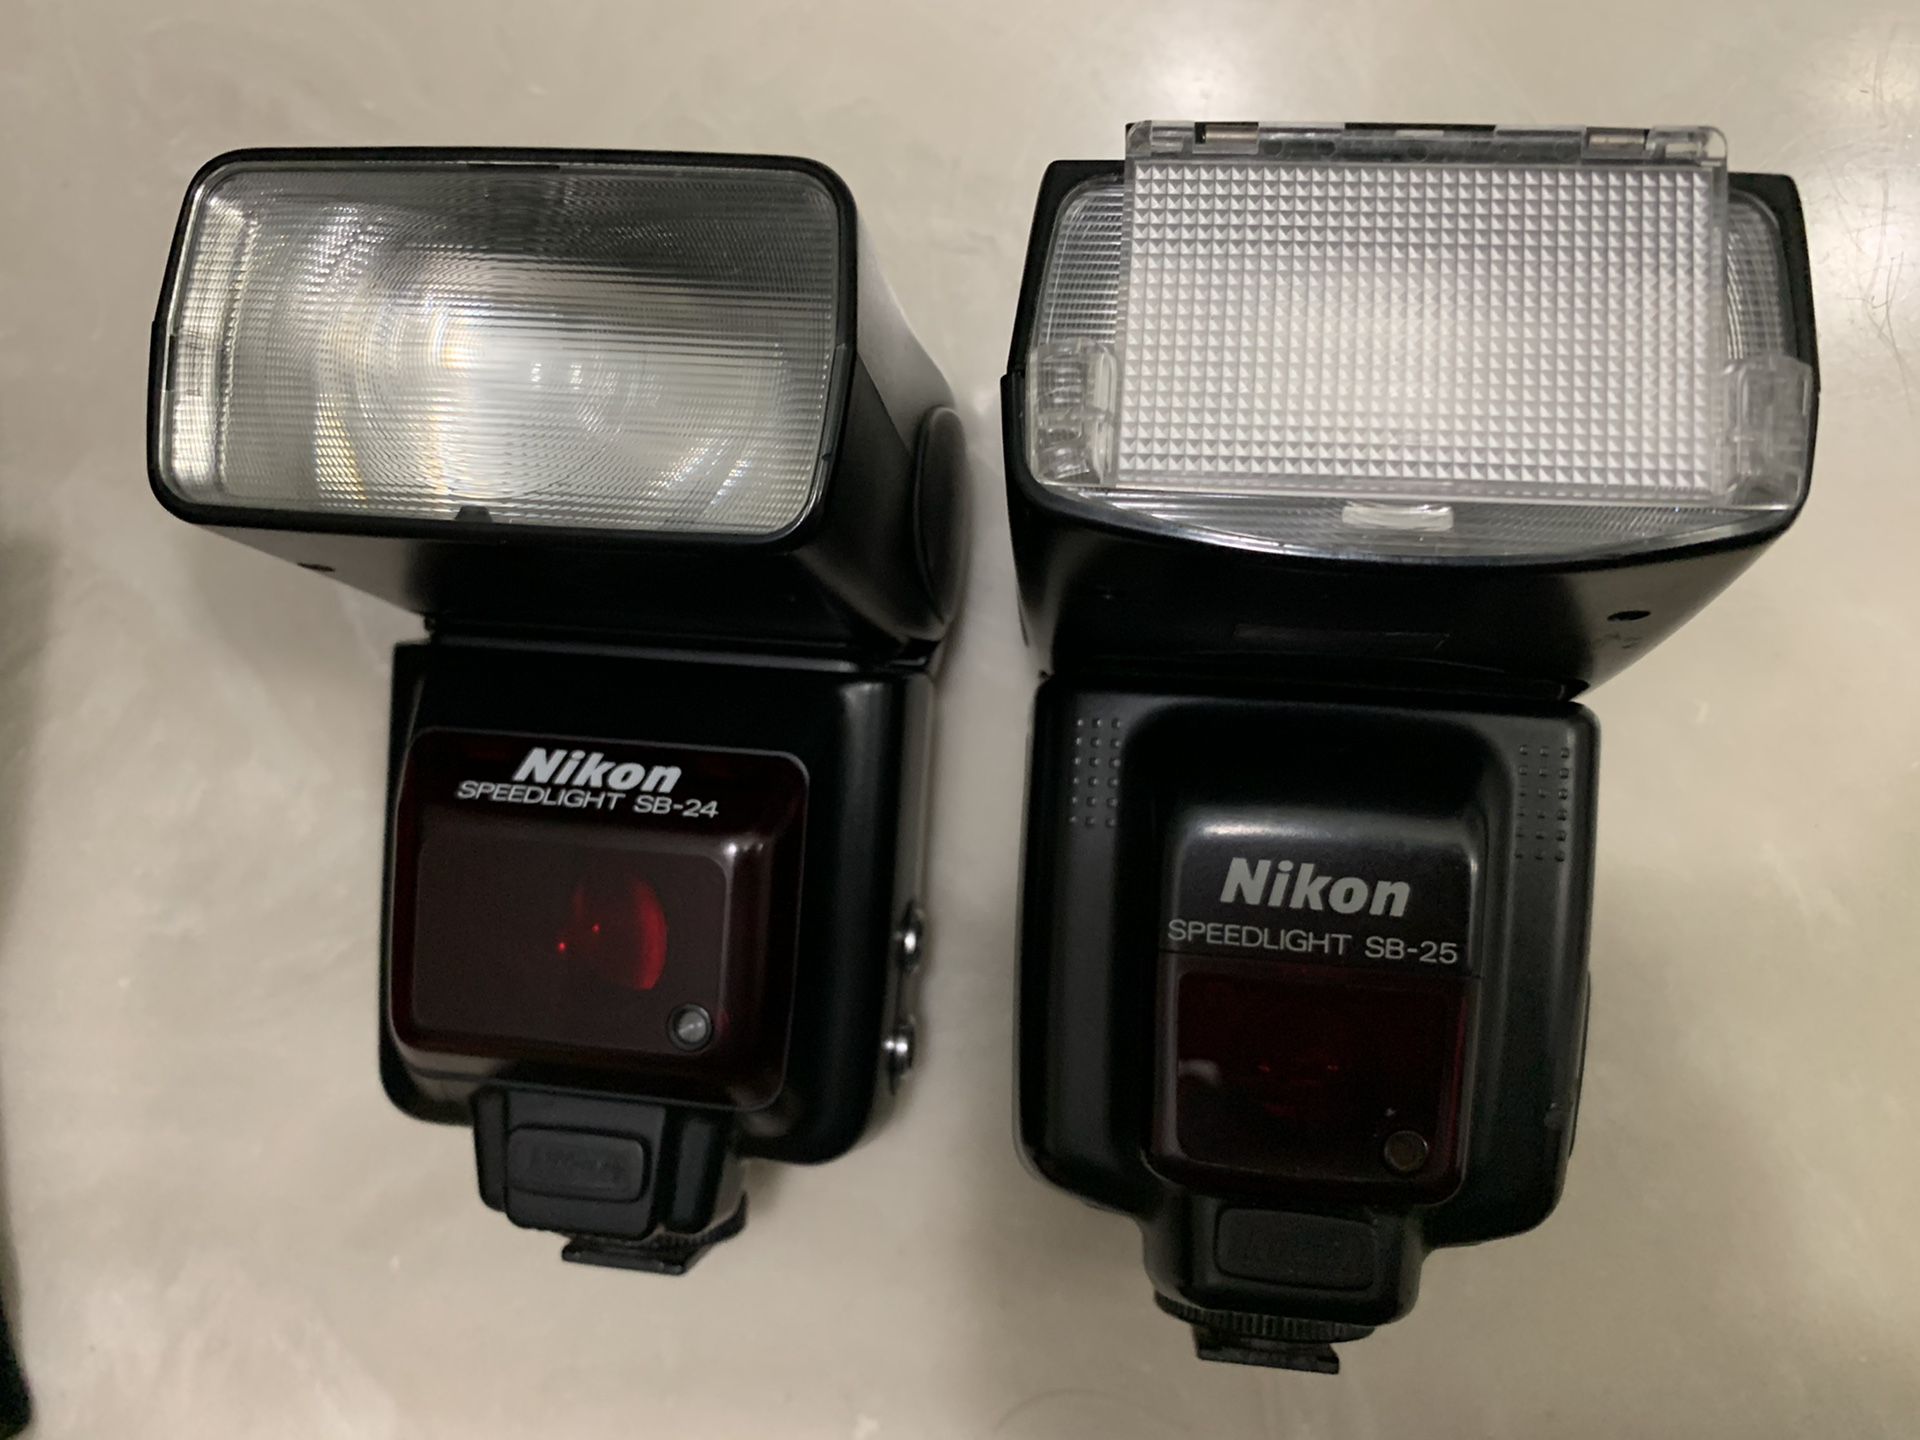 Nikon Speedlight SB-24 & Nikon Speedlight SB-25